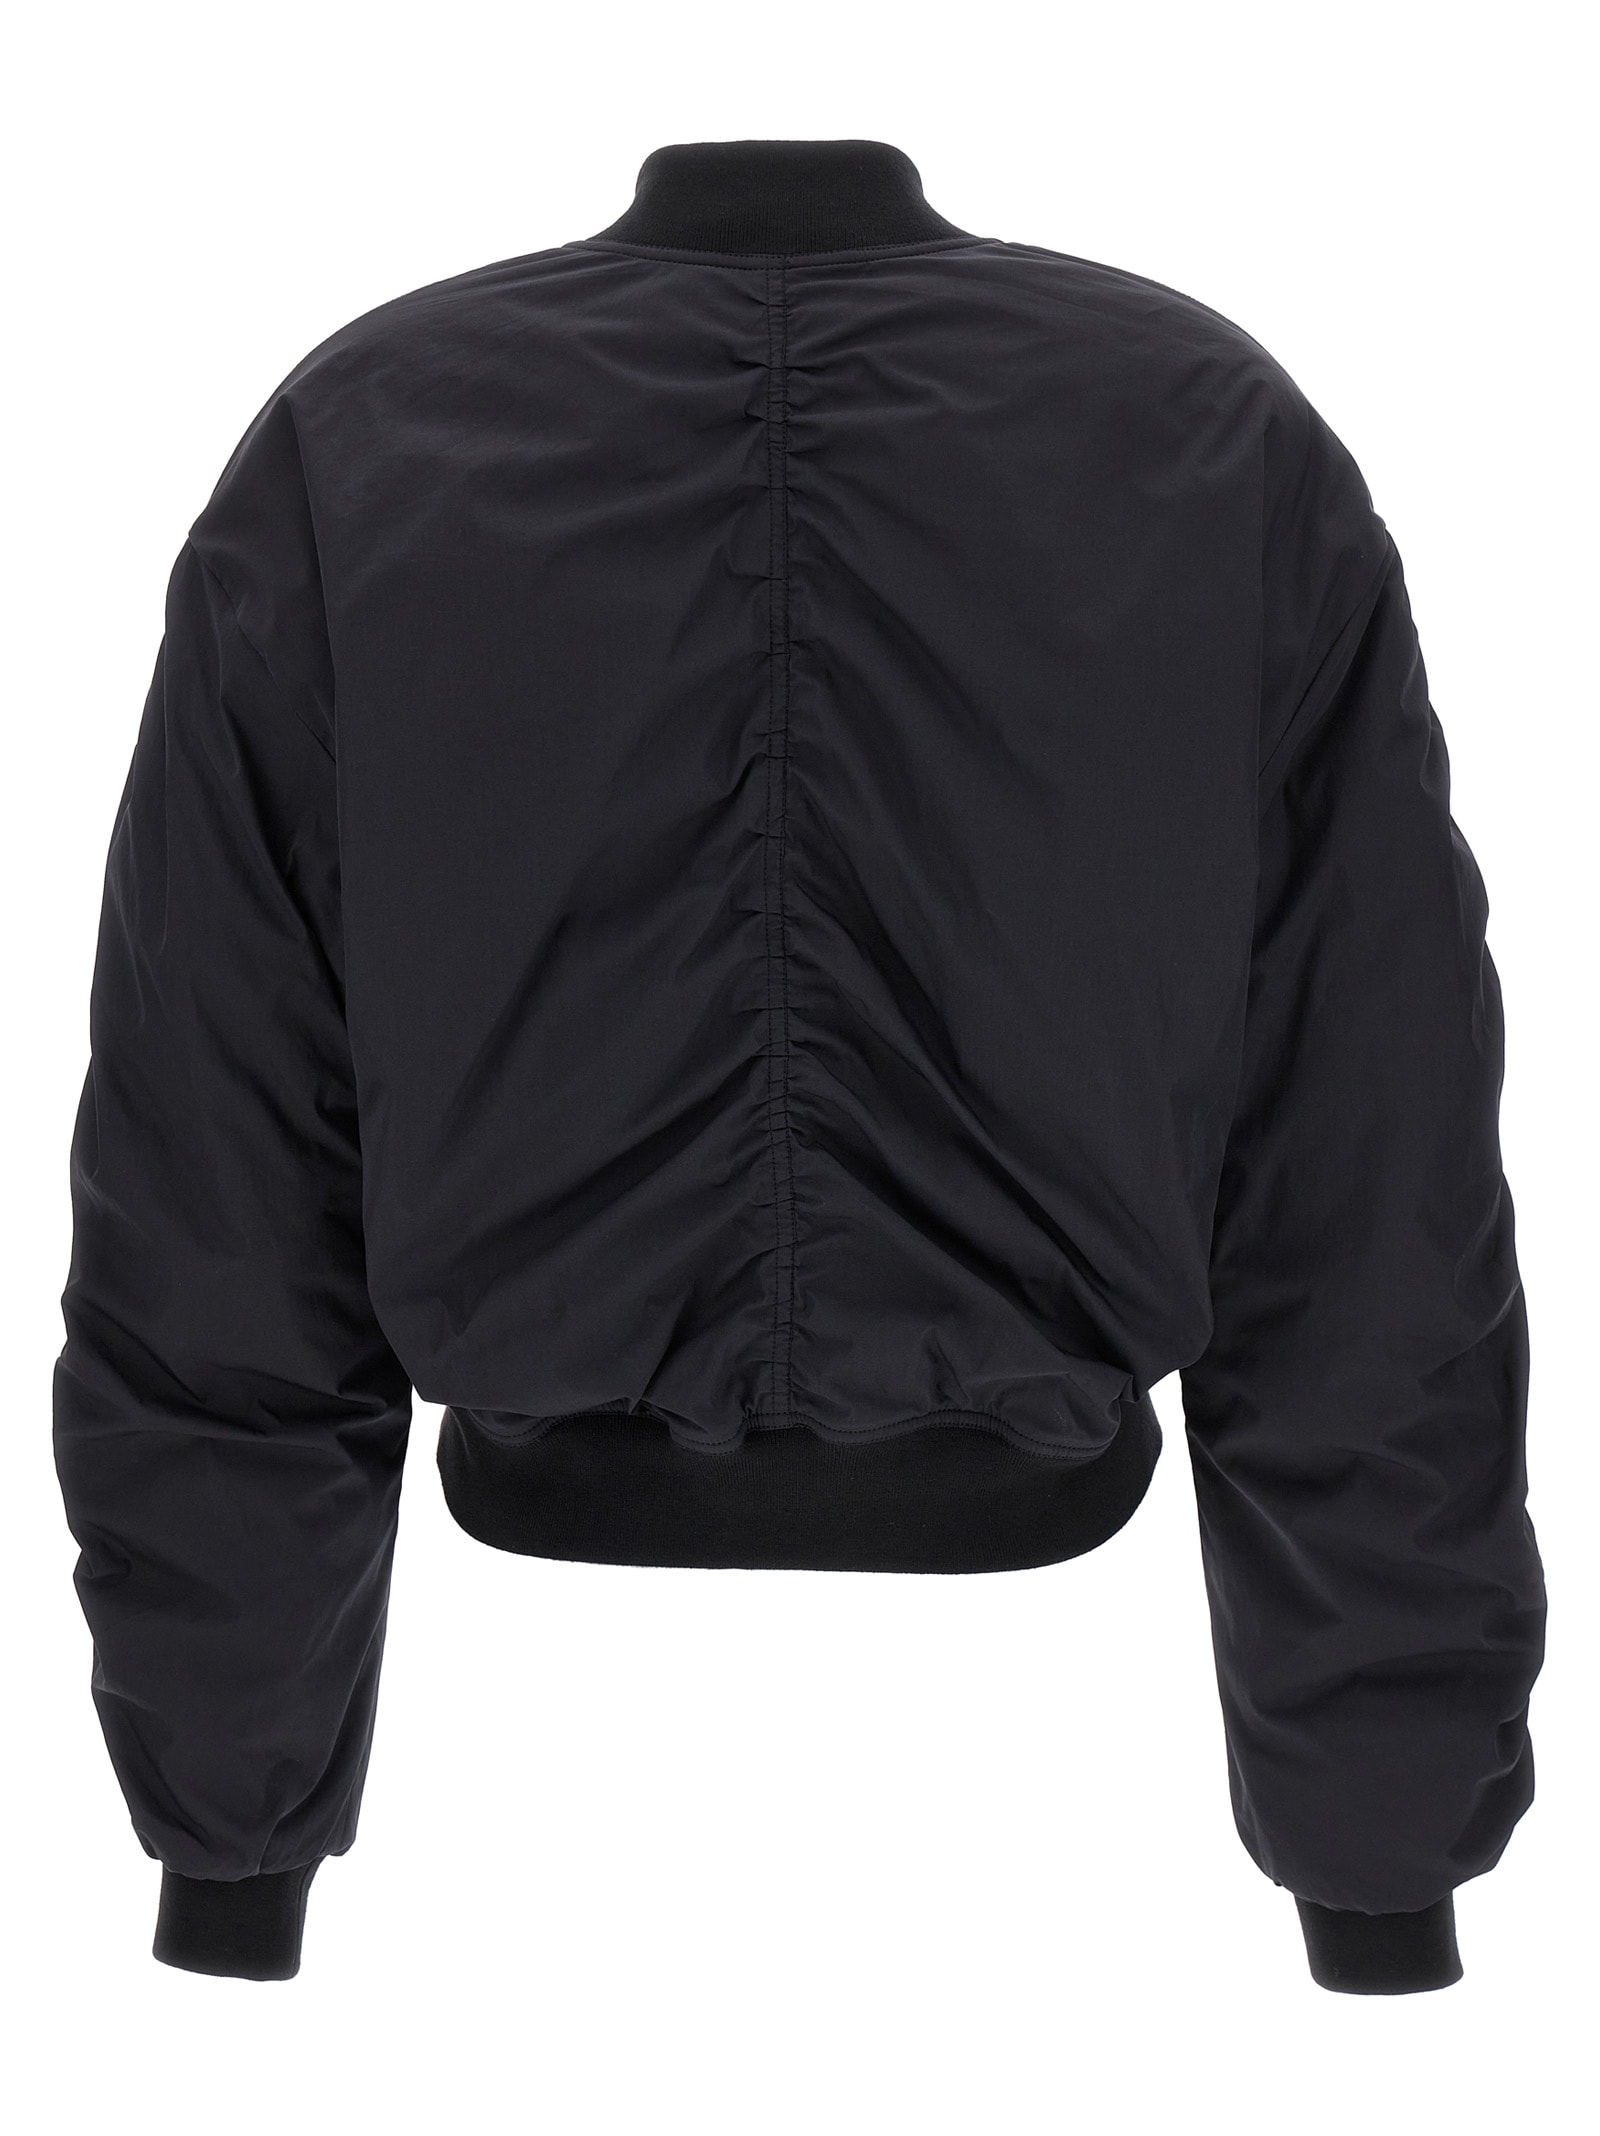 Shop Marant Etoile Bessime Bomber Jacket In Black